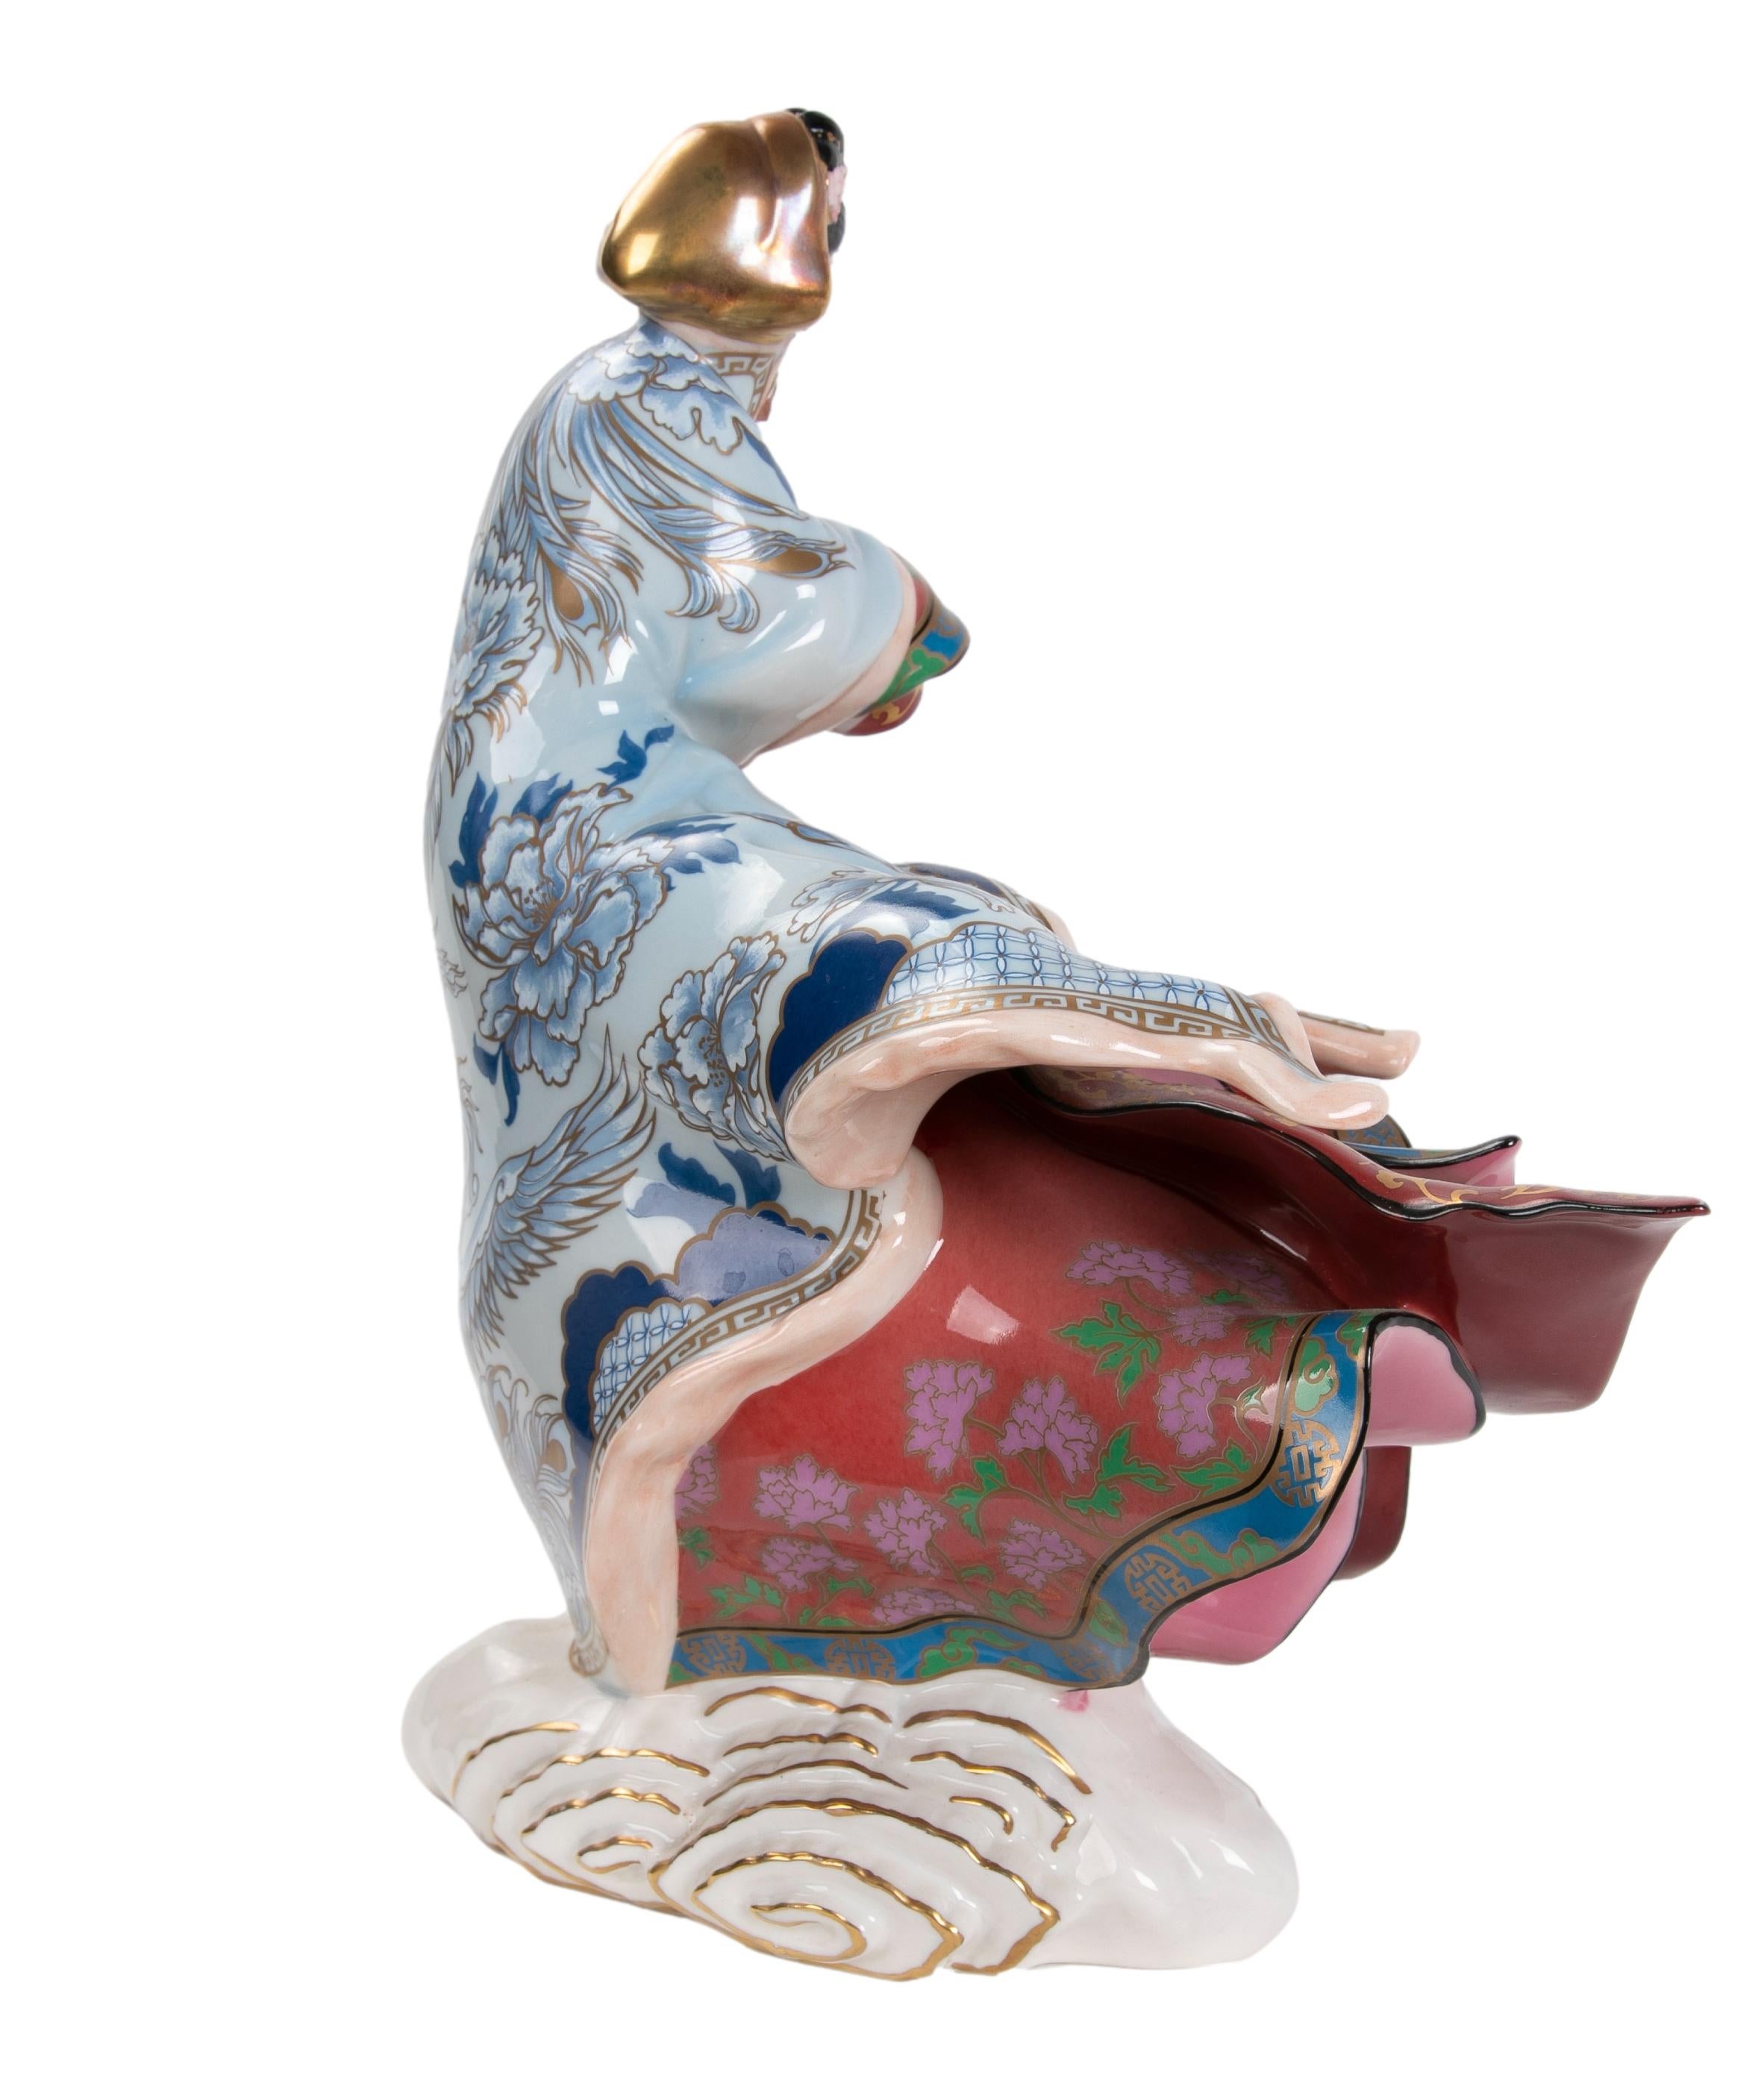 sculpture en porcelaine des années 1980 représentant une femme japonaise, fabriquée par le Franklin Mint
Edition limitée et numérotée n° M 7256, comme le titre Empress of The Snow.